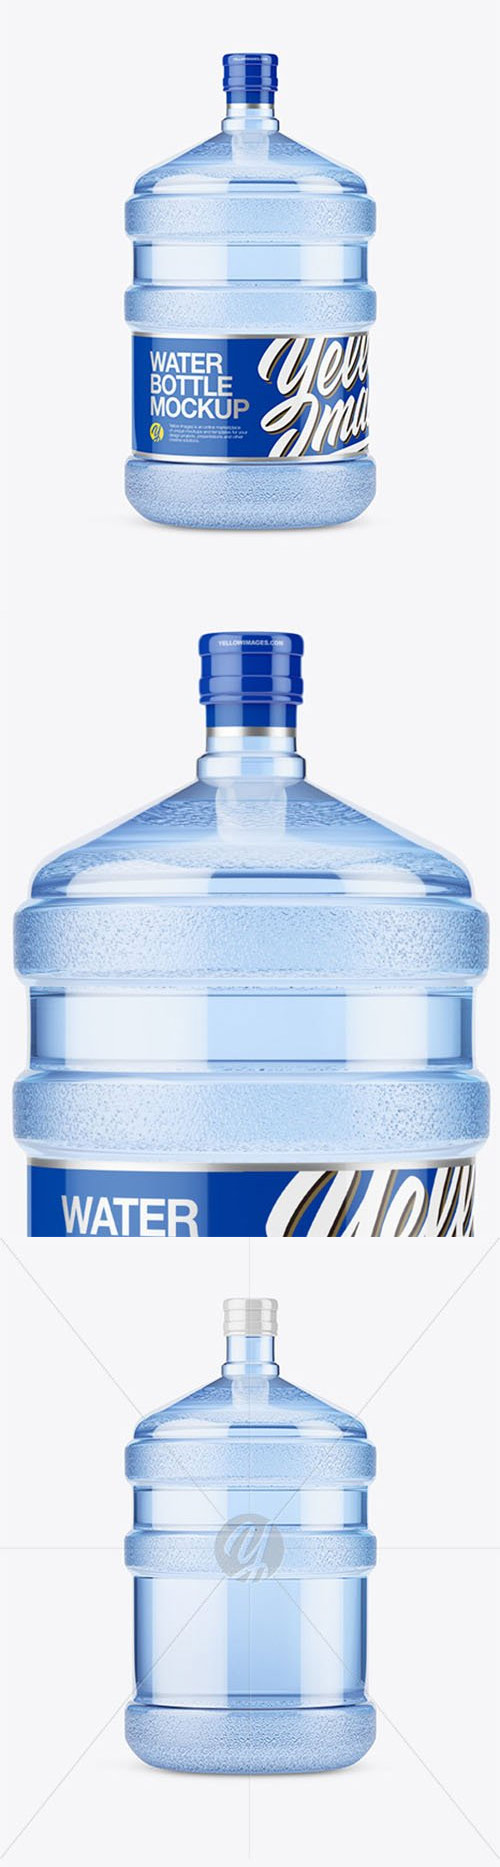 PET Plastic Water Bottle 20l Mockup - Front View 57024